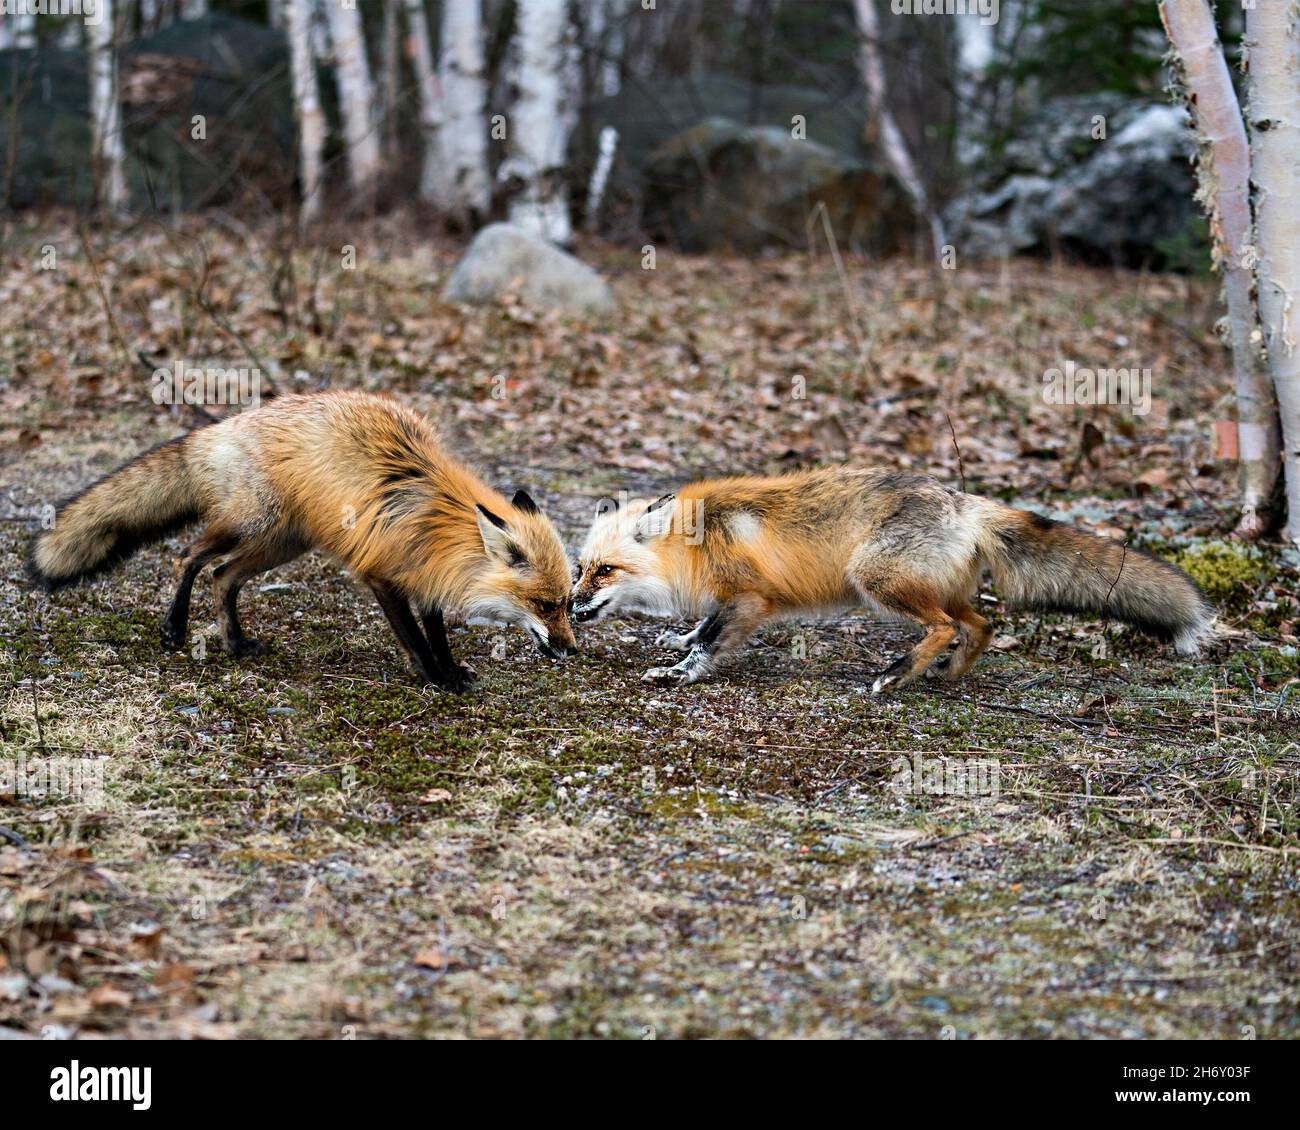 Coppia di volpi rossi che interagiscono con gli alberi di betulla di fondo in primavera mostrando coda di volpe, pelliccia, nel loro ambiente e habitat. Foto di Fox. Foto Stock